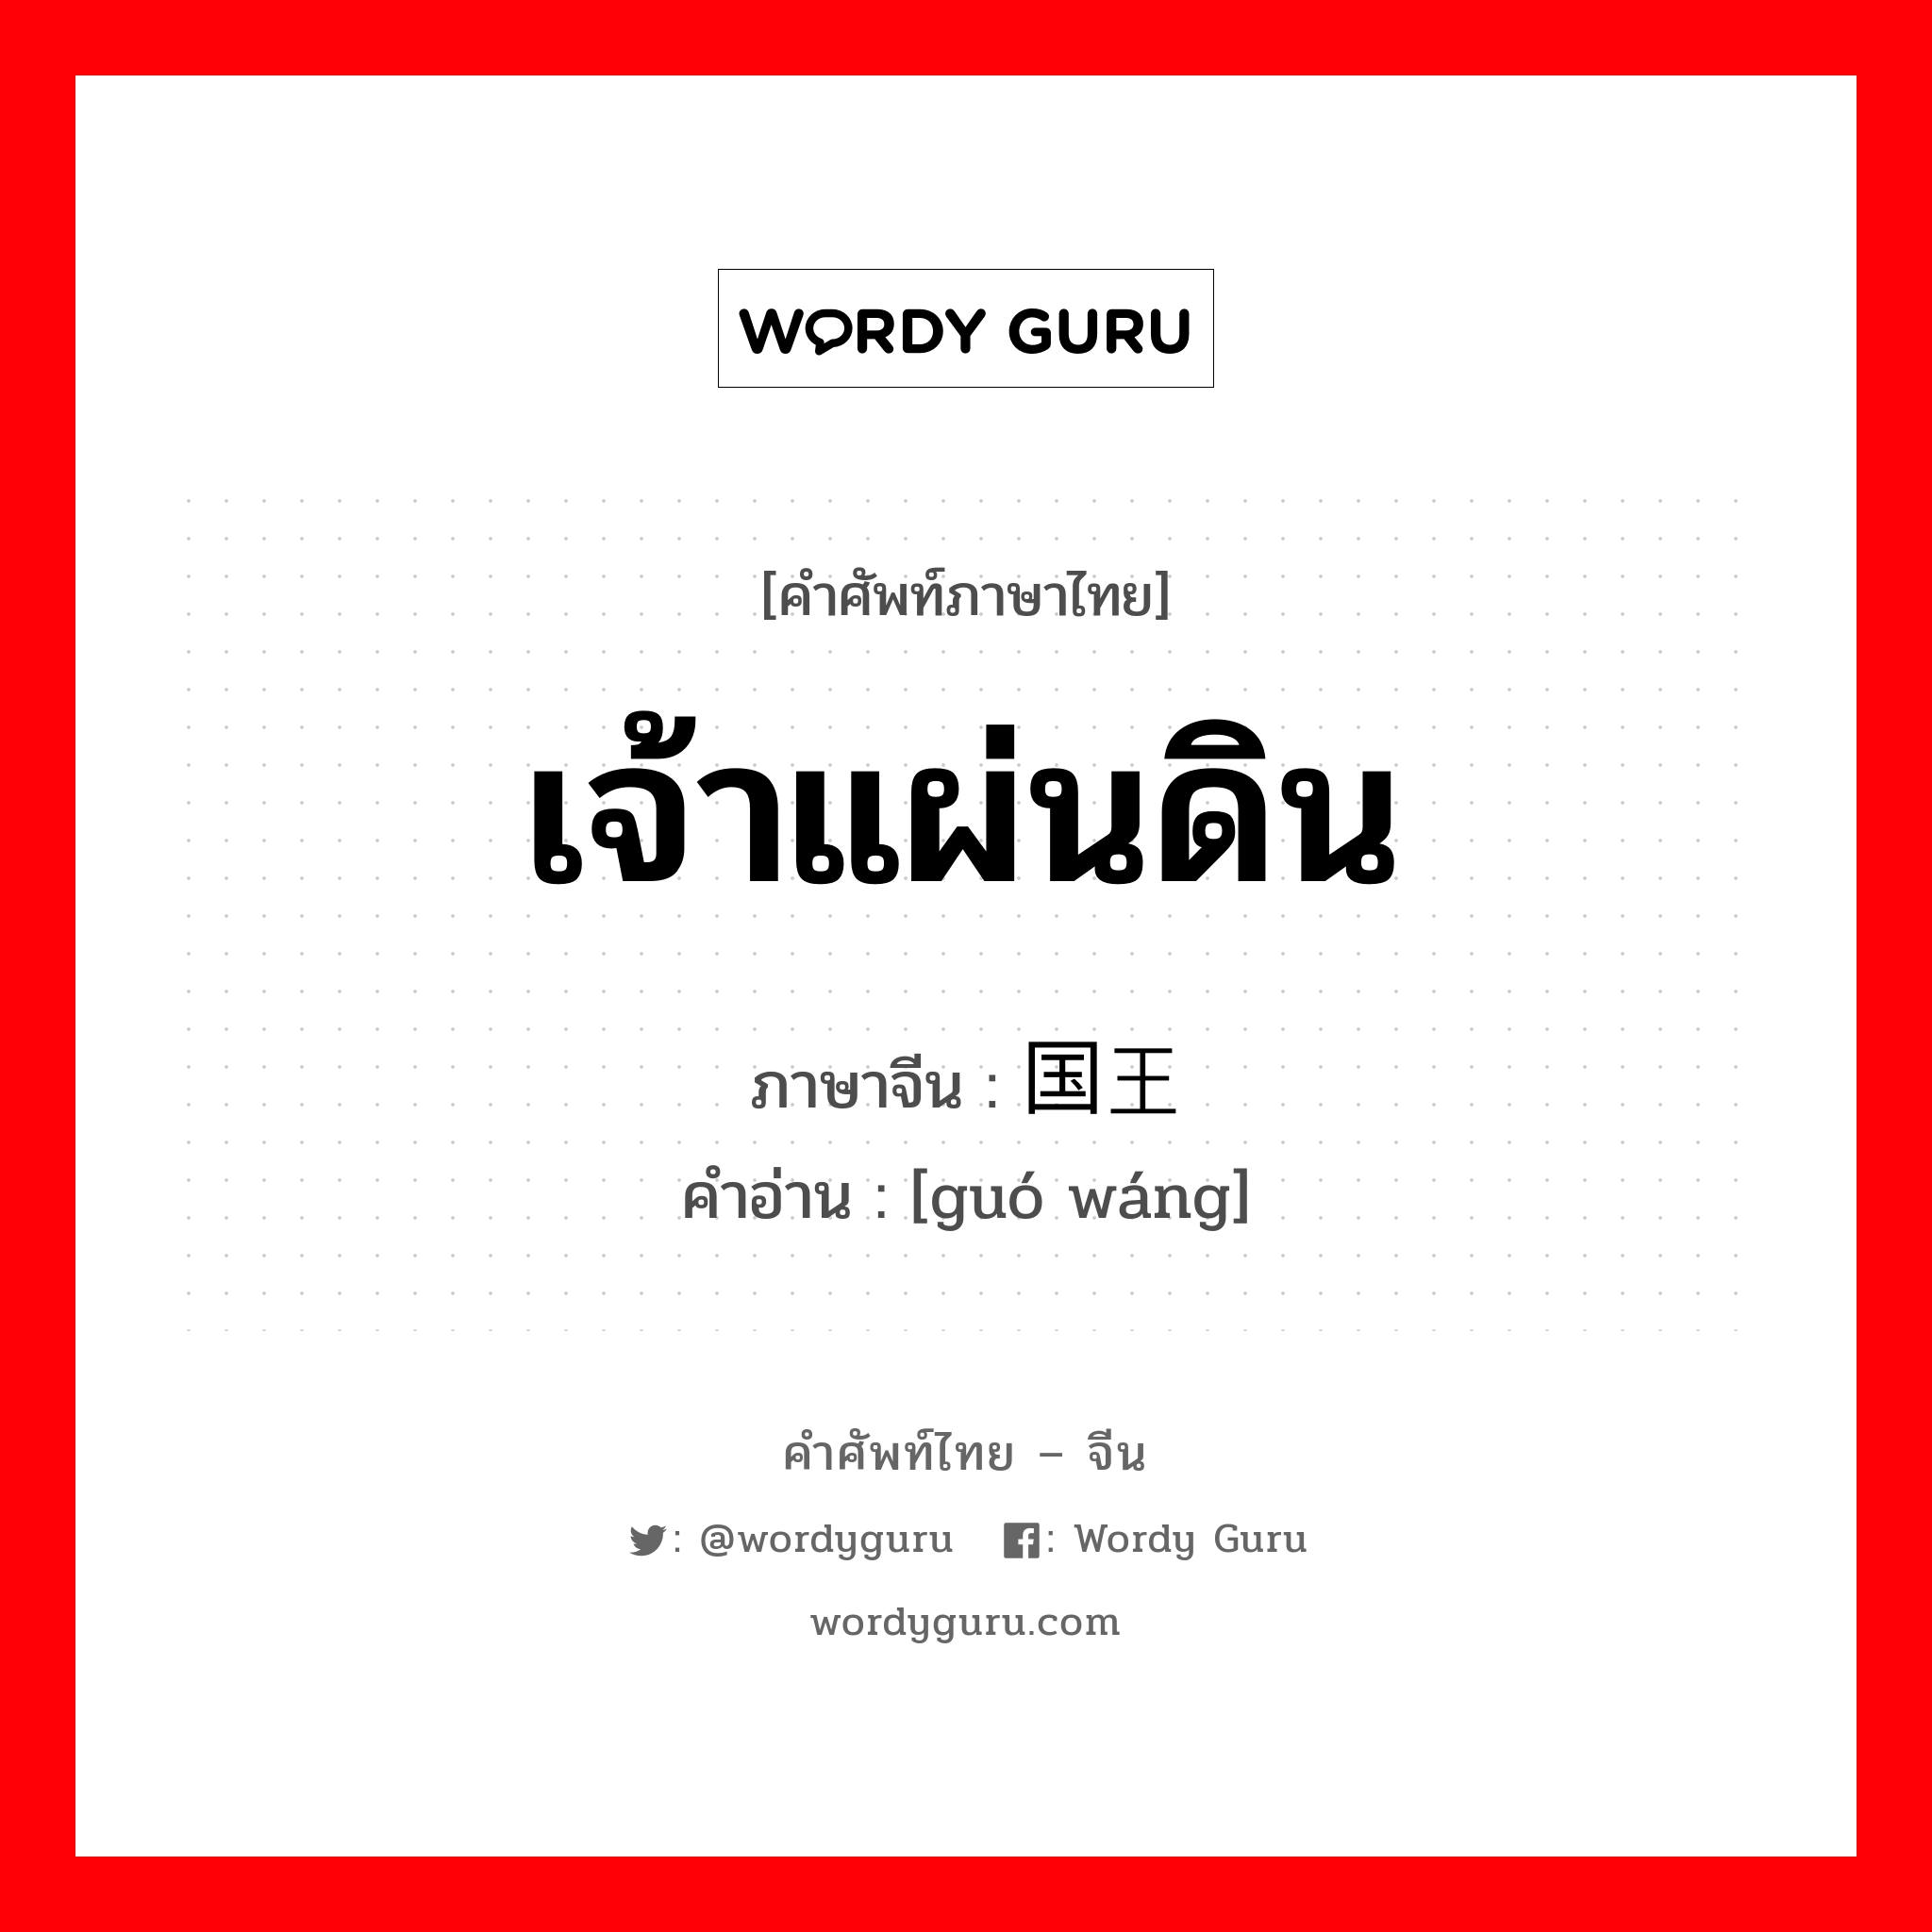 เจ้าแผ่นดิน ภาษาจีนคืออะไร, คำศัพท์ภาษาไทย - จีน เจ้าแผ่นดิน ภาษาจีน 国王 คำอ่าน [guó wáng]